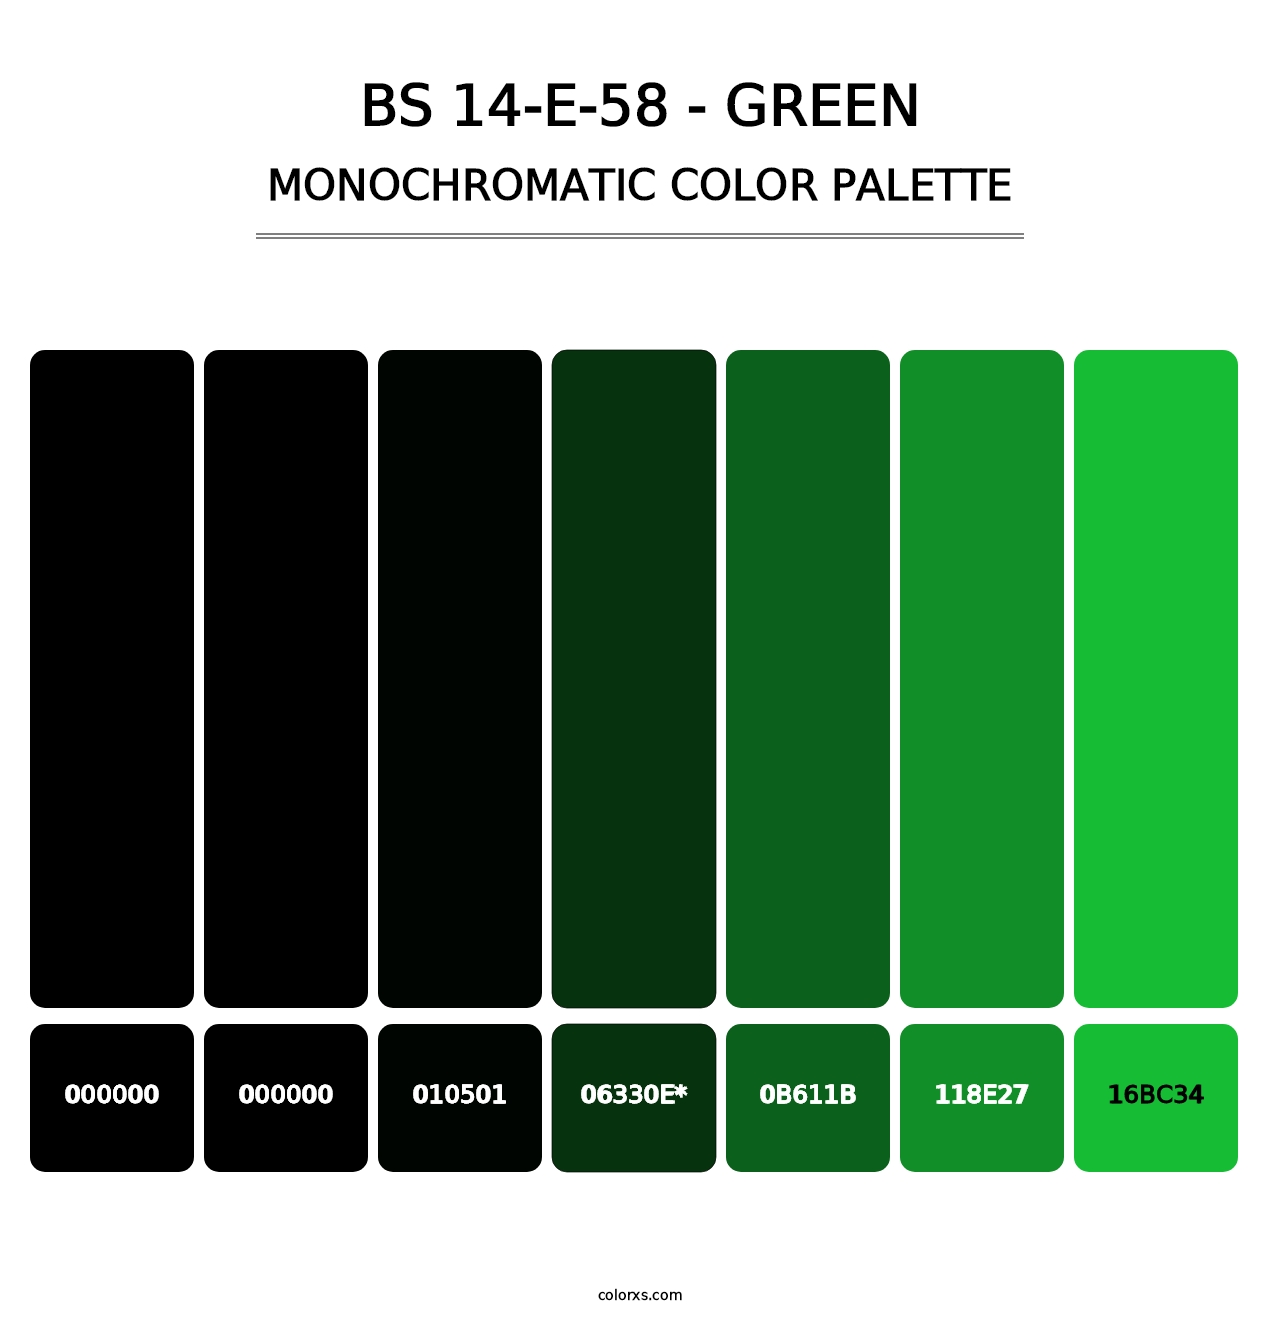 BS 14-E-58 - Green - Monochromatic Color Palette